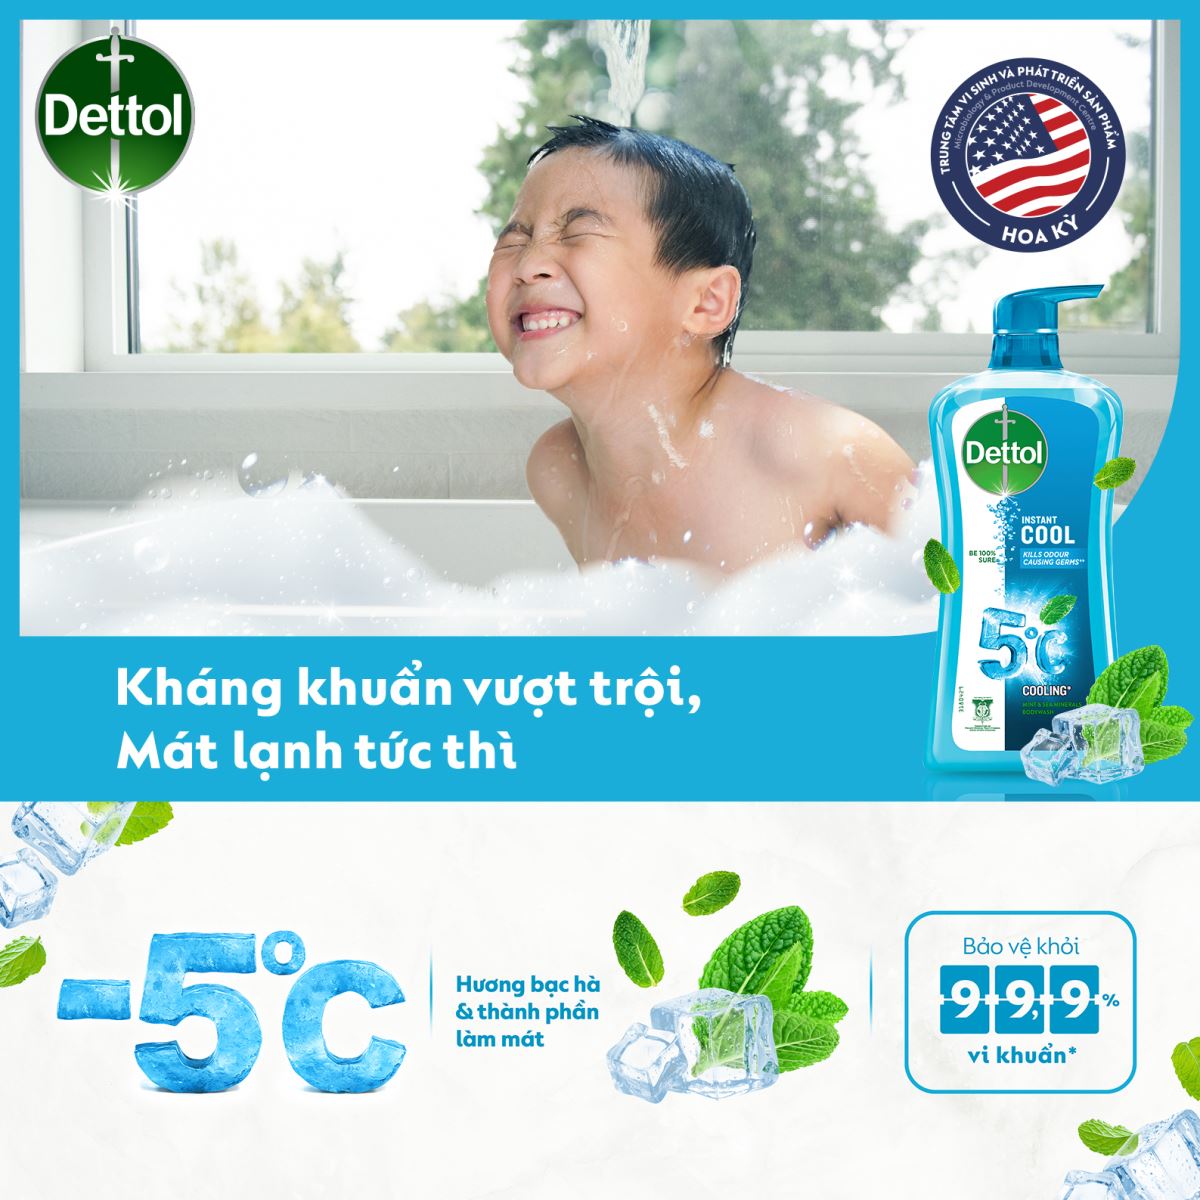 Các loại dung dịch sát khuẩn và sữa tắm từ Dettol mềm mịn